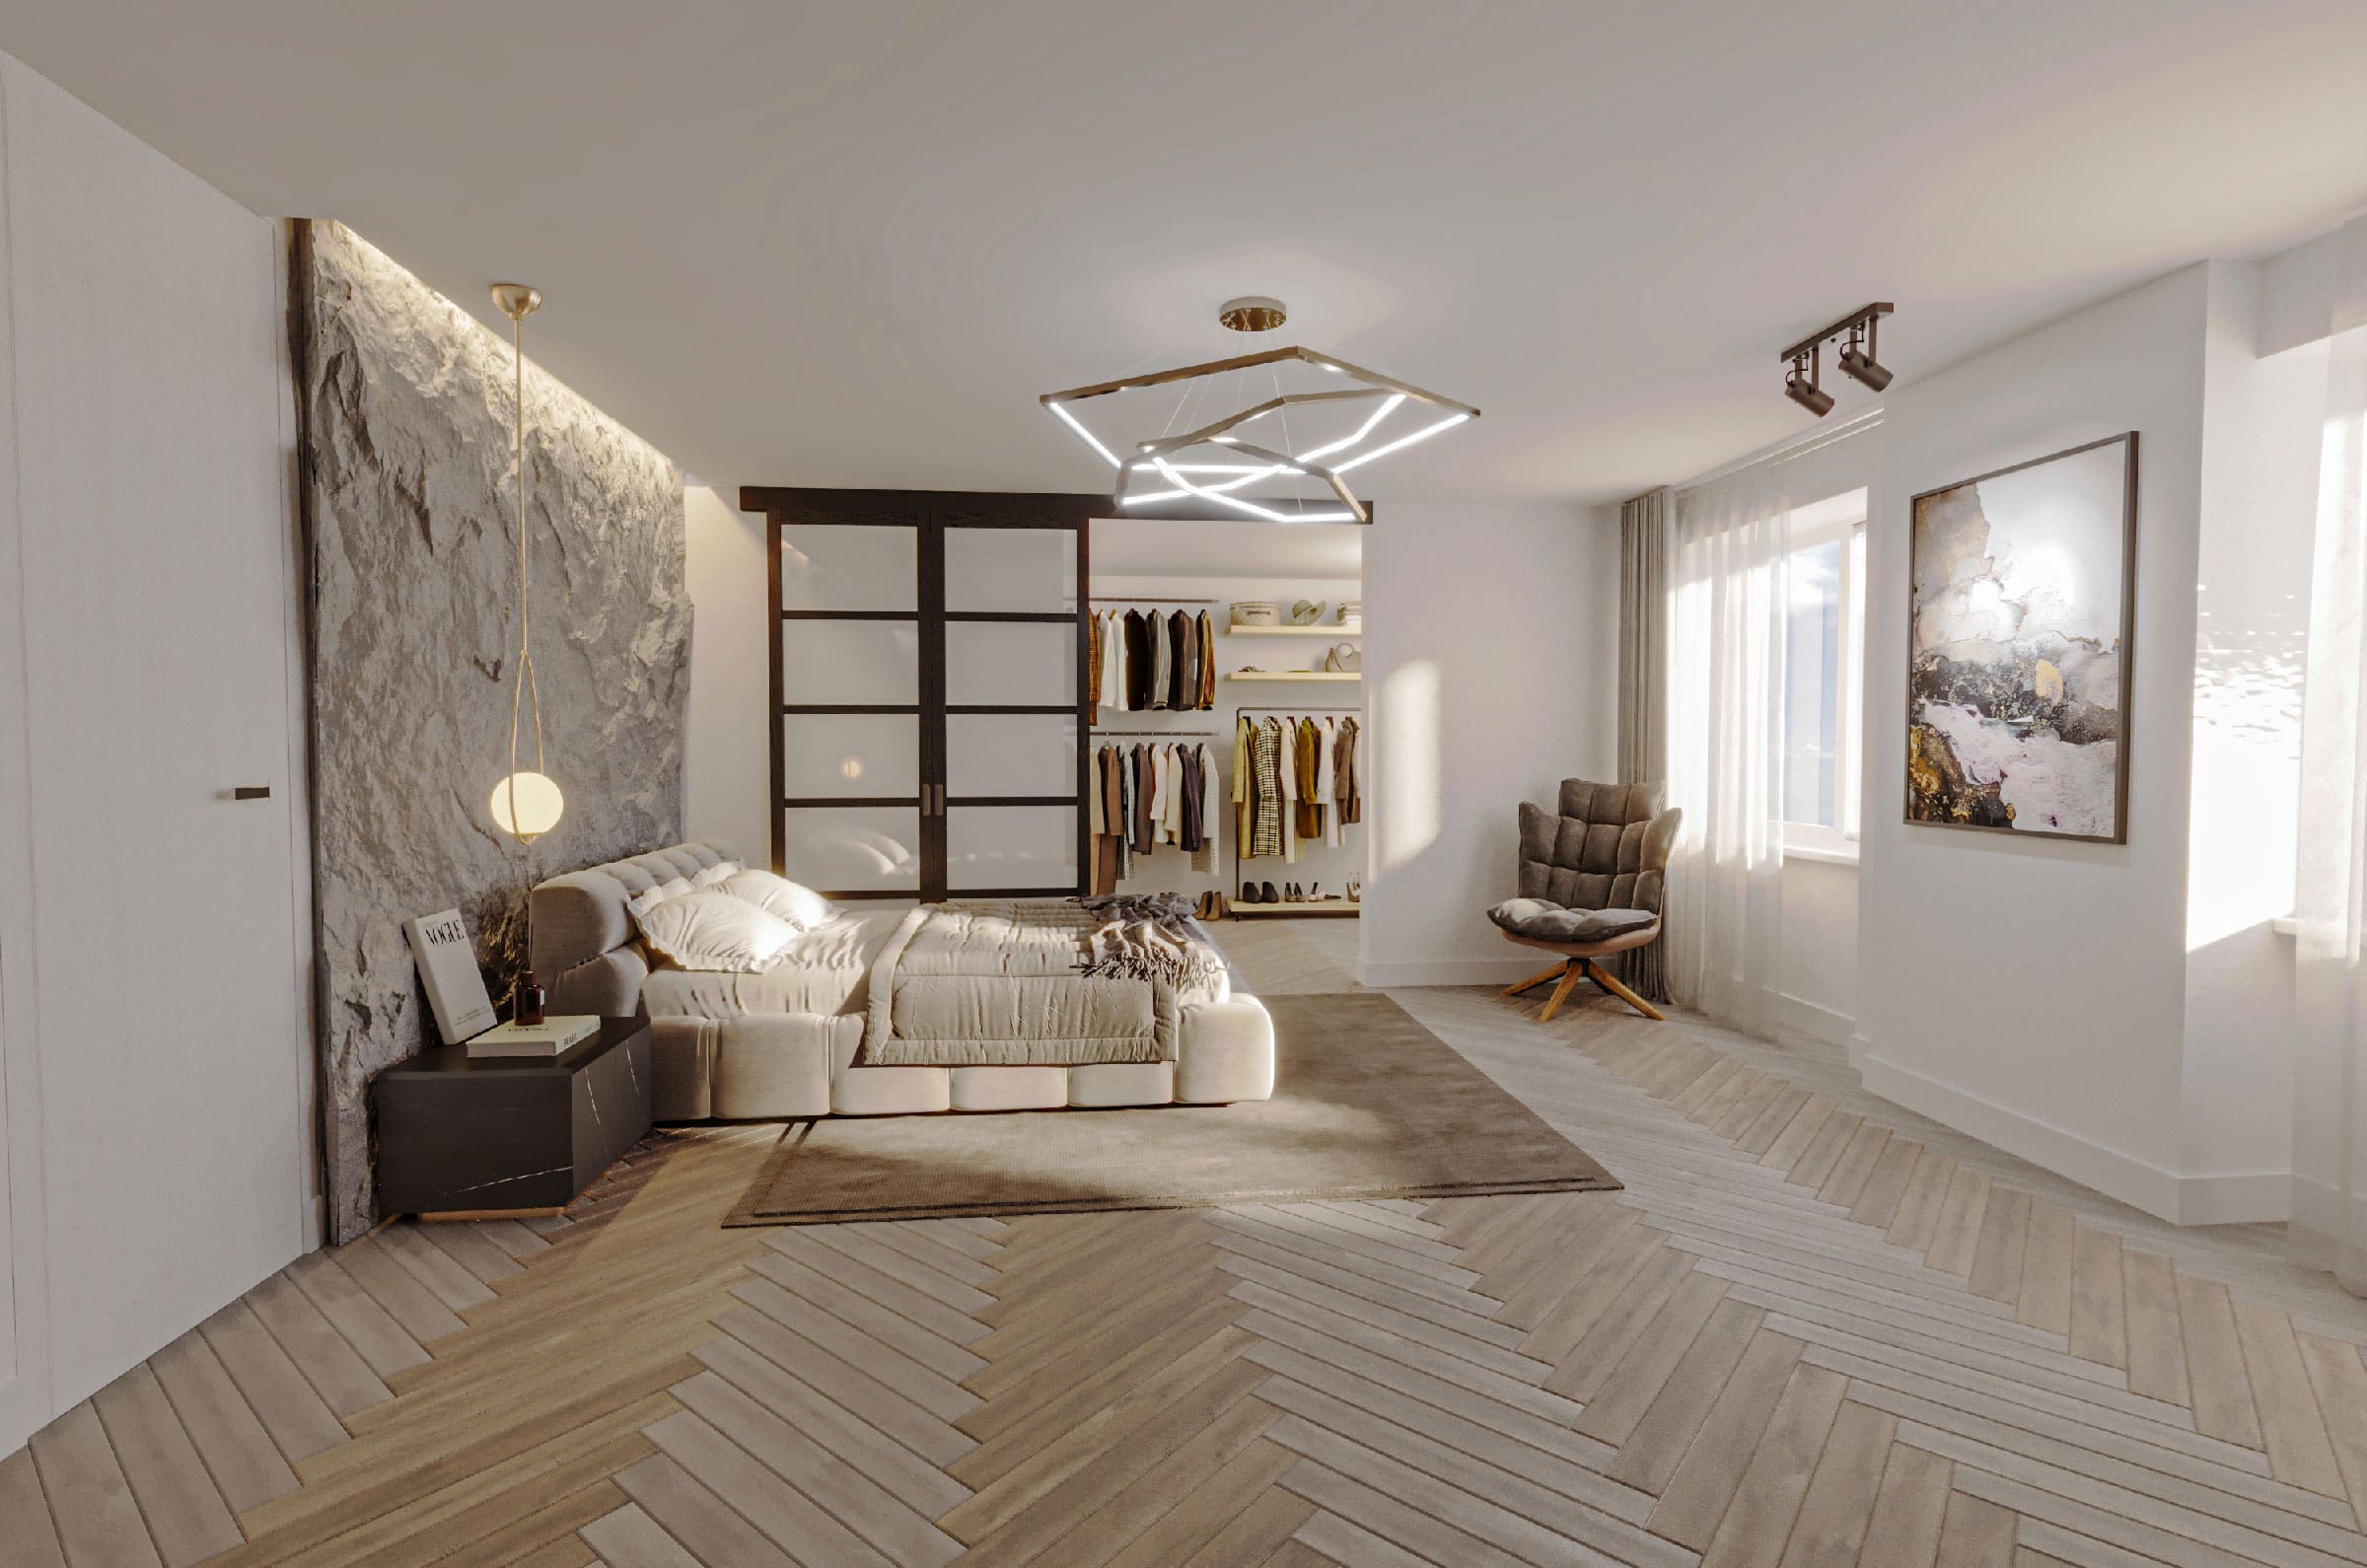 Zum Verkauf gelangen hierDachgeschoss-Maisonette - Wohnungen in Salzburg mit einer Gesamtfläche von ca 179 m² pro Wohnung in absoluter Top Lage samt genehmigter Einreichplanung.